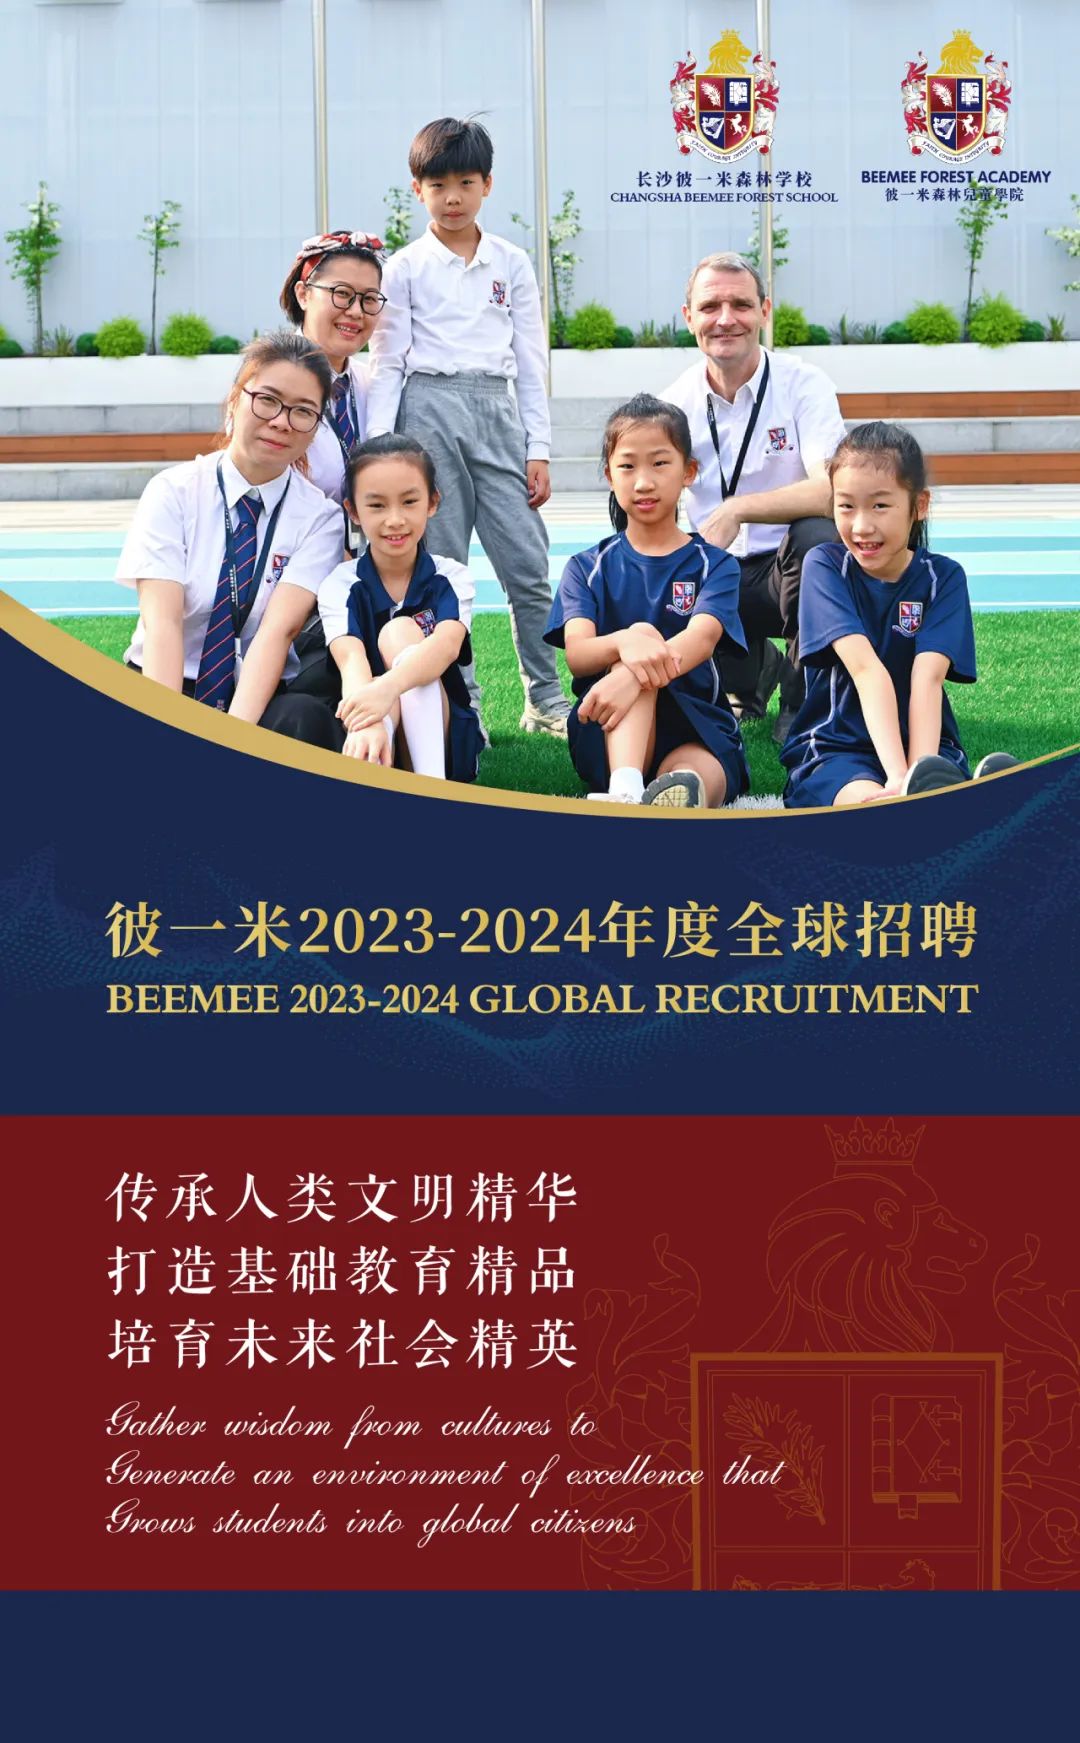 彼一米开放2023-2024全球招聘通道 | BeeMee 2023-2024 Global Recruitment